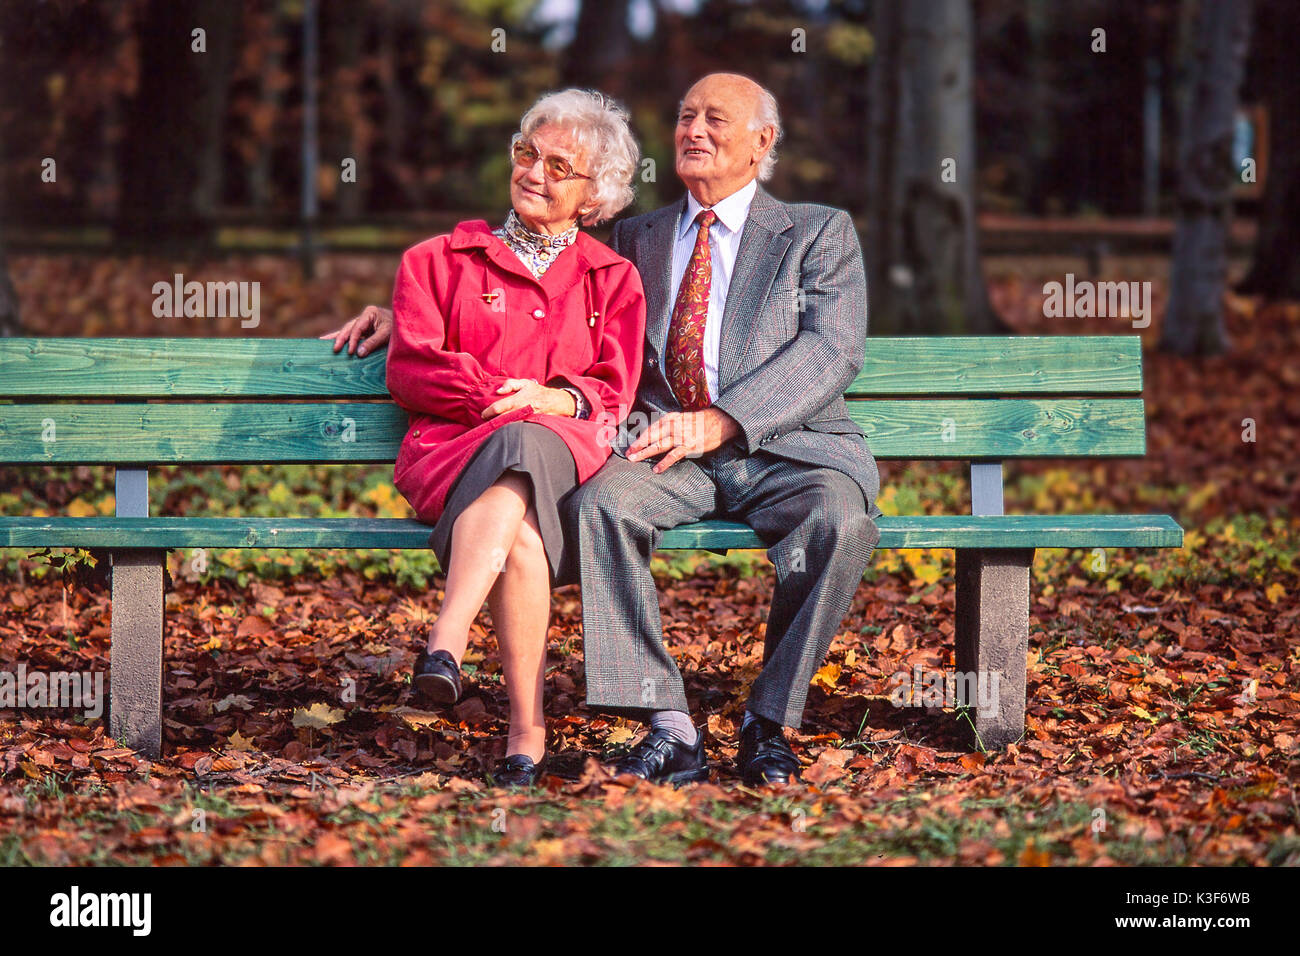 Senior Citizen's giovane siede insieme su una panca in legno in legno Foto Stock